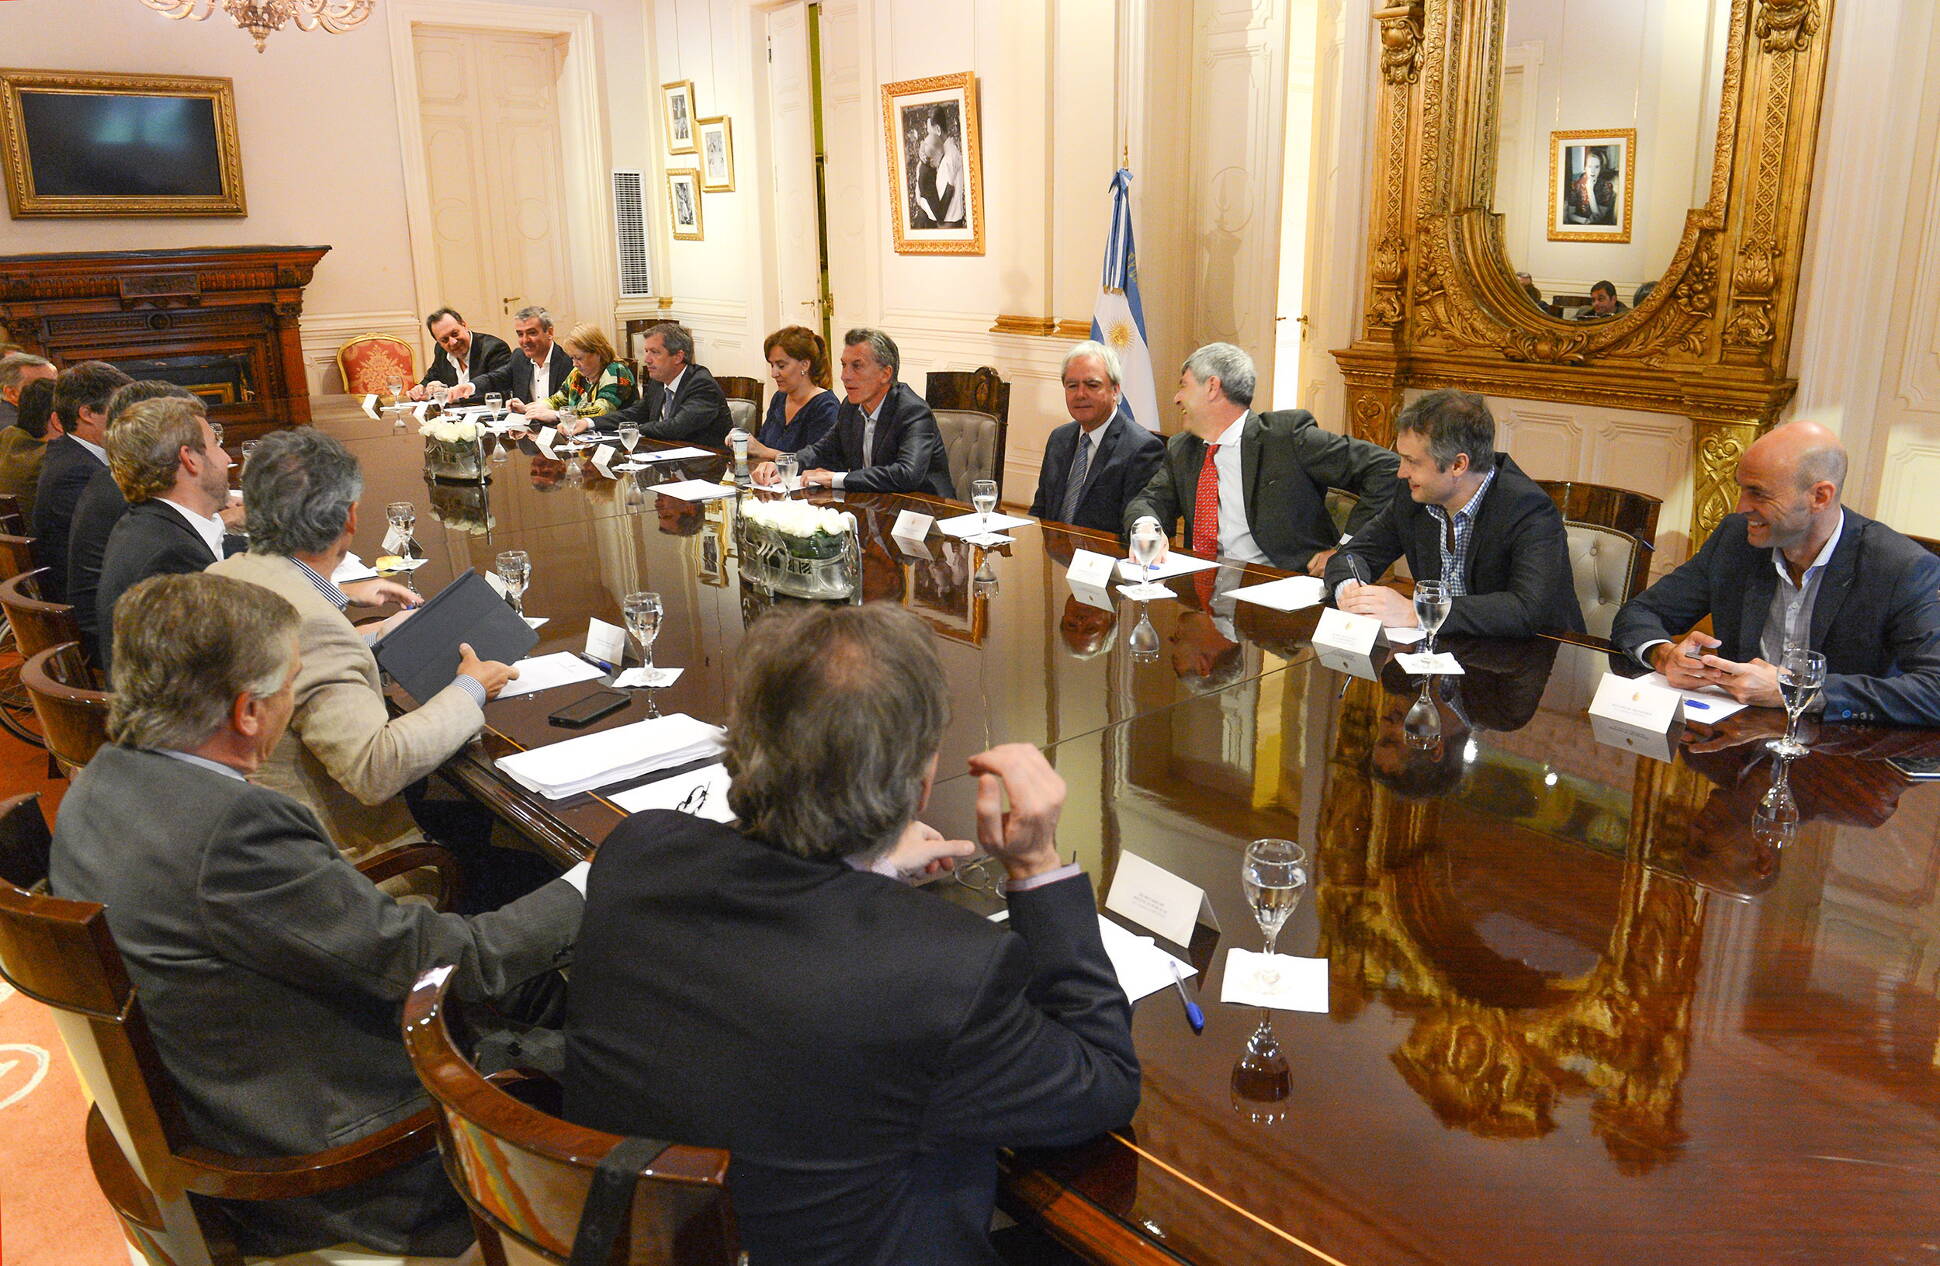 El Presidente encabezó la primera reunión de Gabinete de su Gobierno, Salón Eva Perón en Casa Rosada